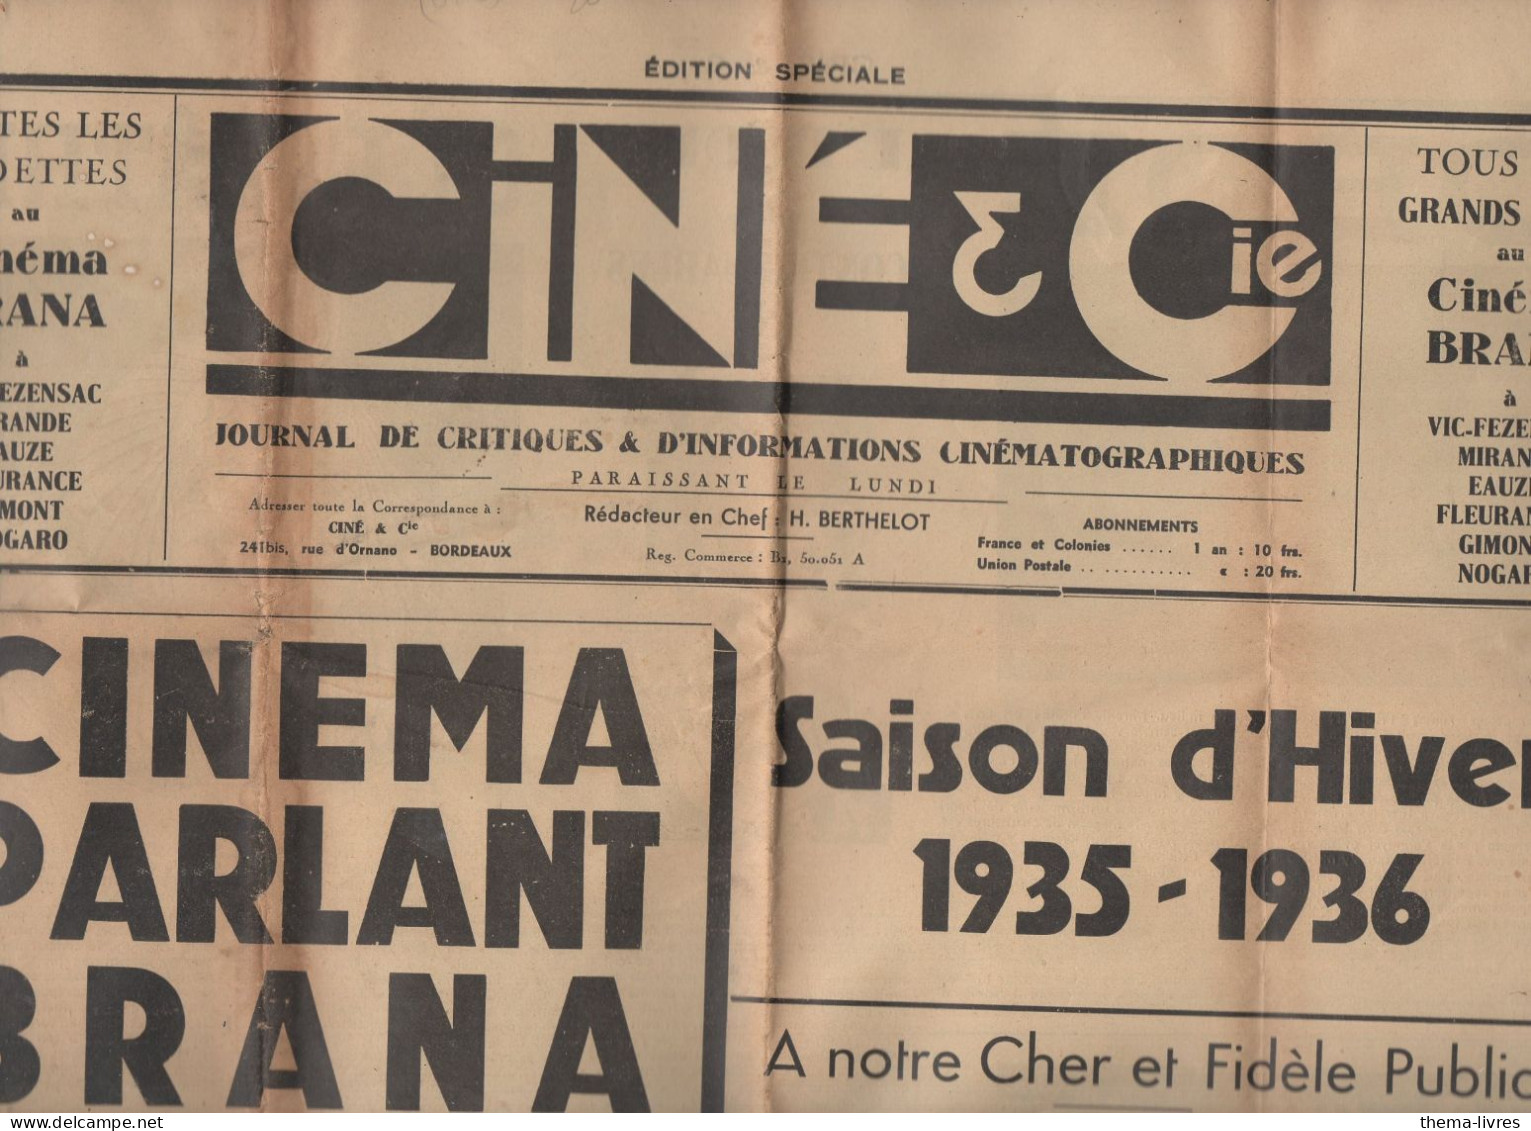 Vic Fezensac Mirande, Eauze, Fleurance,Gimont Nogaro (32 Gers) Journal CINE ET CIE BRANA SAISON HIVER 1935-36 (CAT 5697) - Midi-Pyrénées